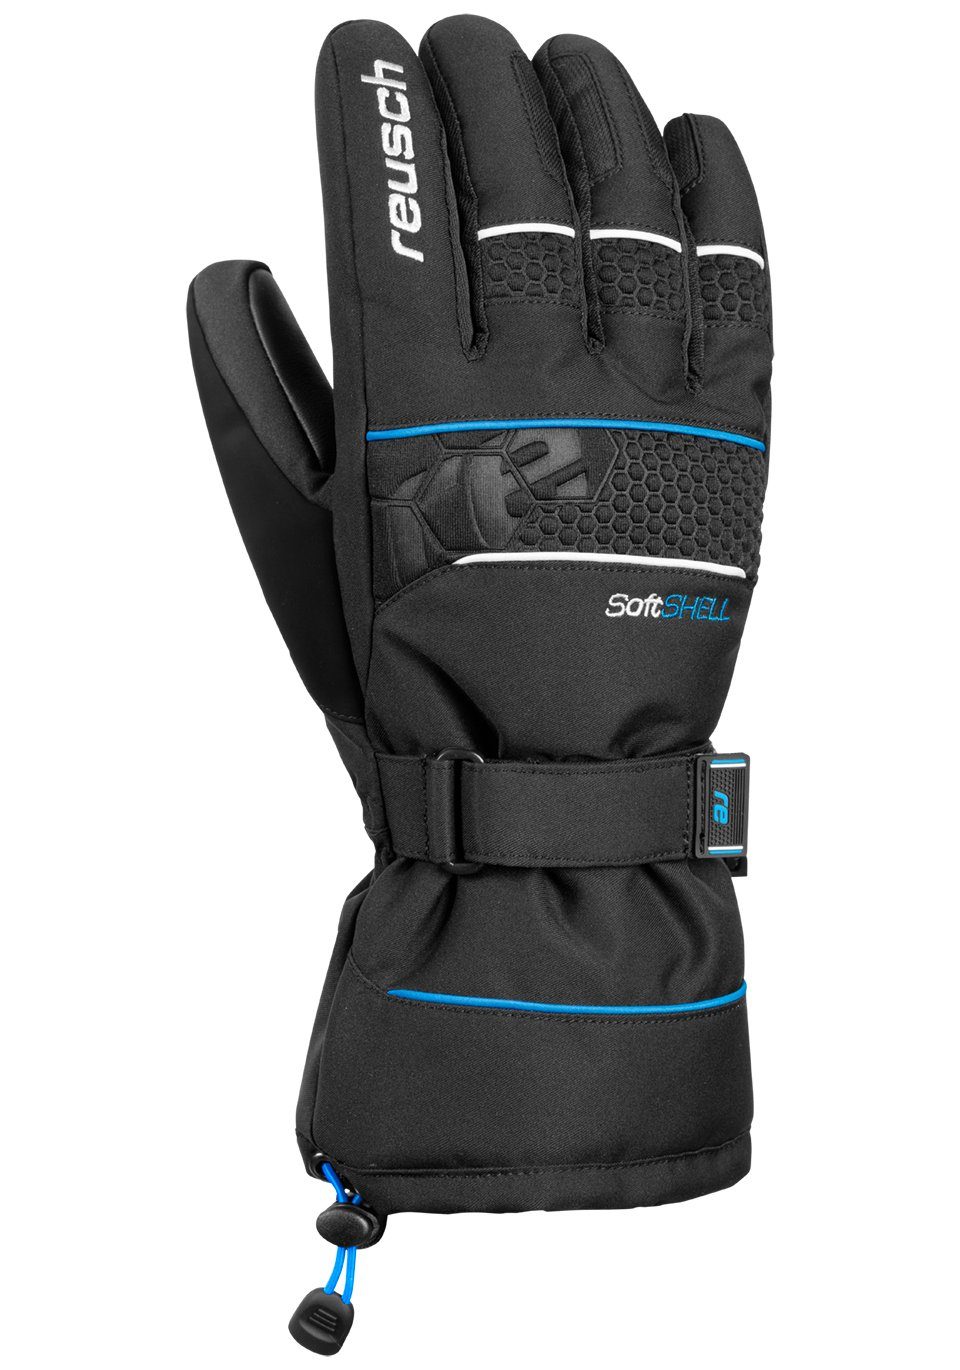 Design XT in Connor R-TEX sportlichem Reusch blau-schwarz Skihandschuhe